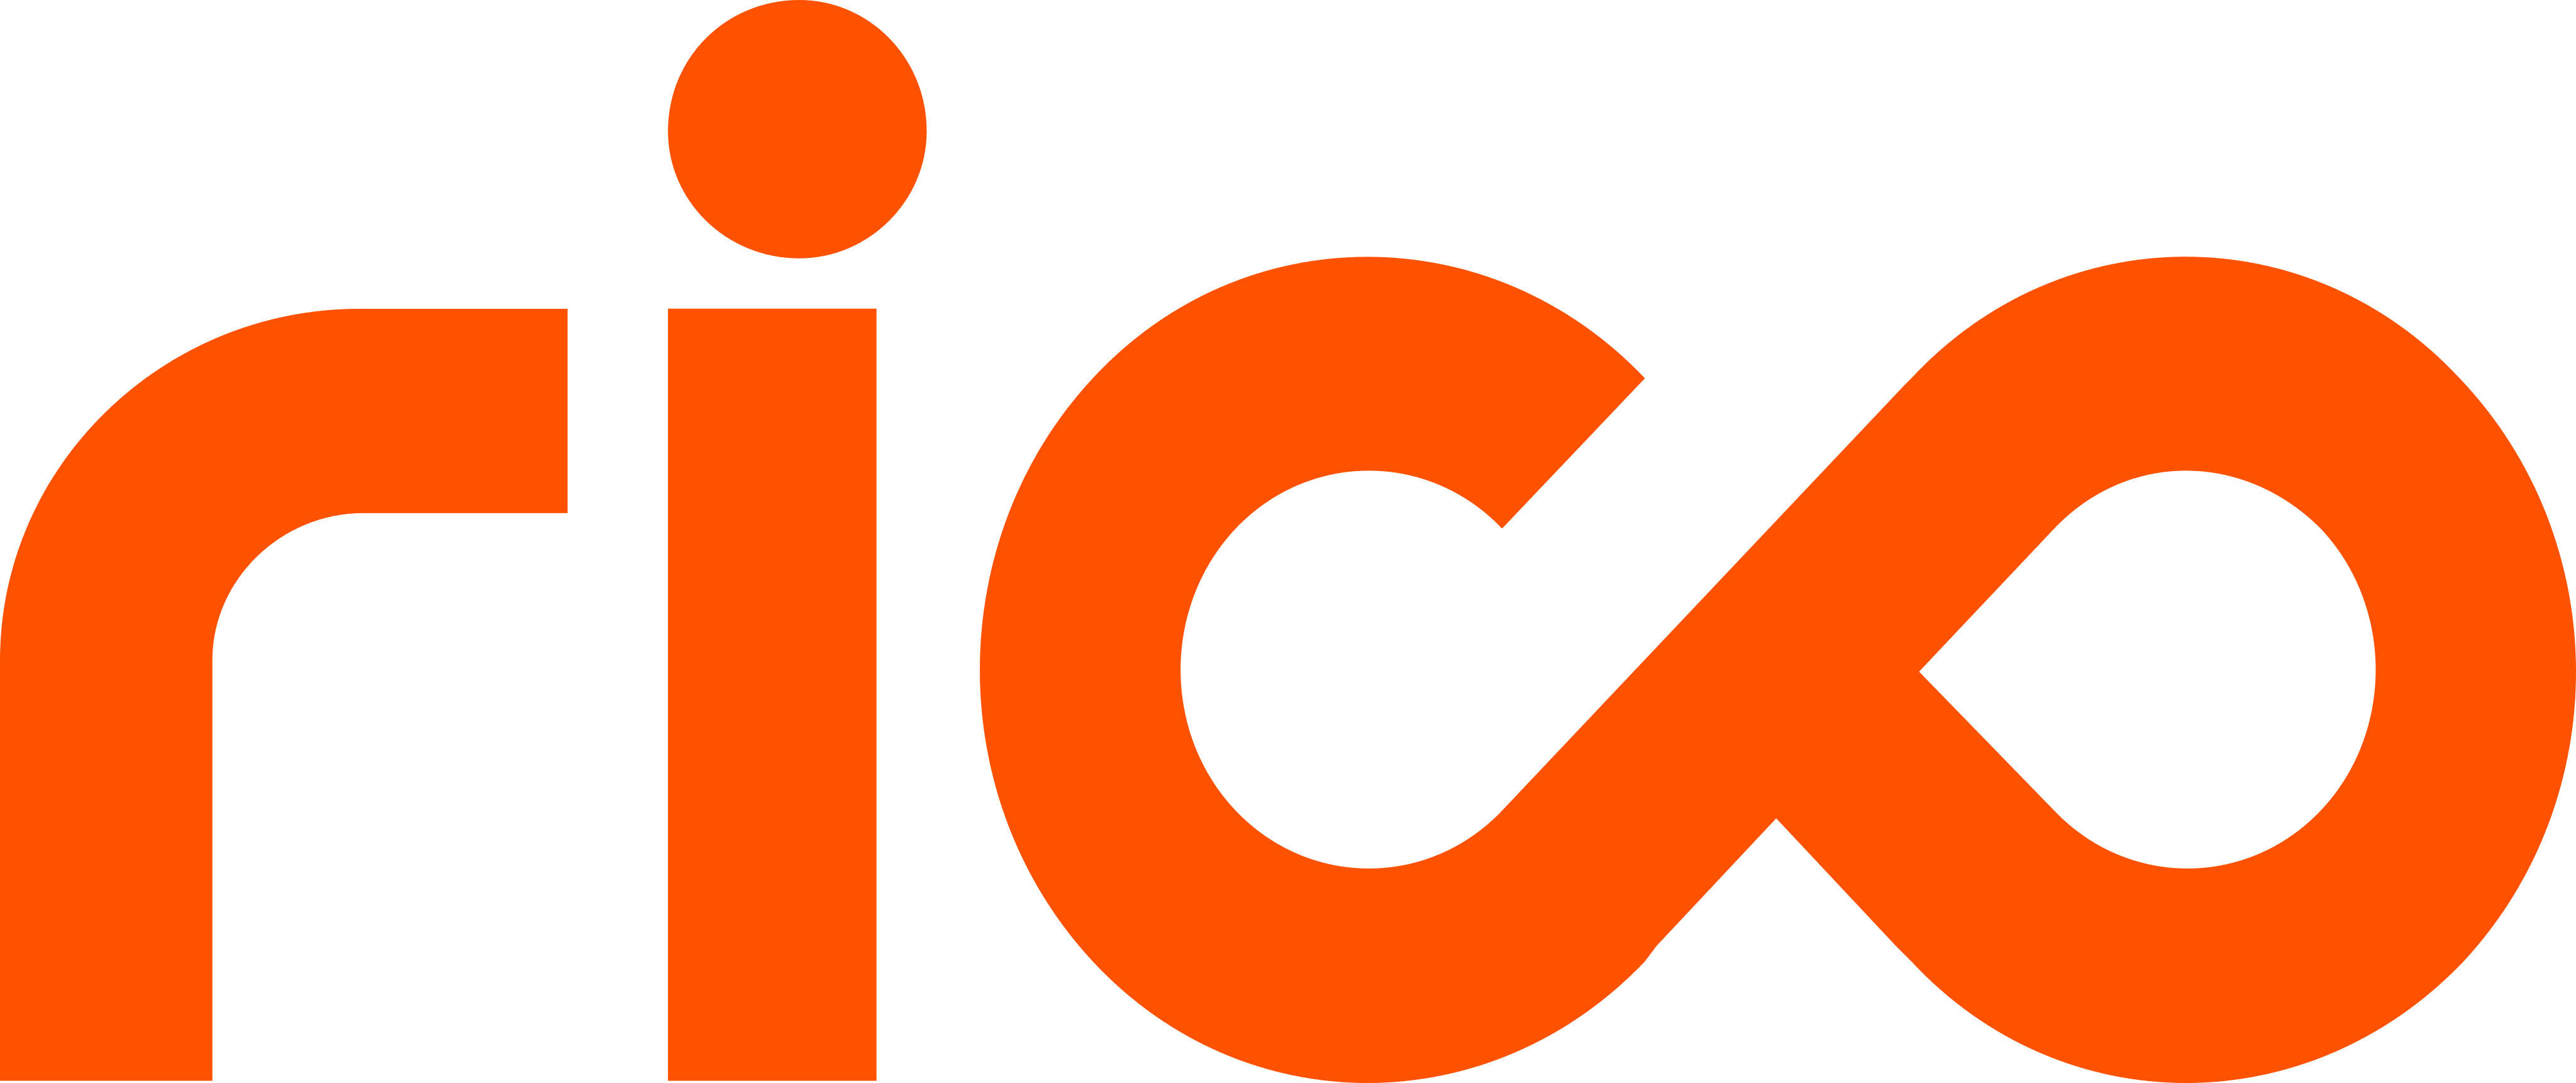 Логотип Рико. Iray Rico логотип. Росмат Rico logo. Рико 10 логотип.